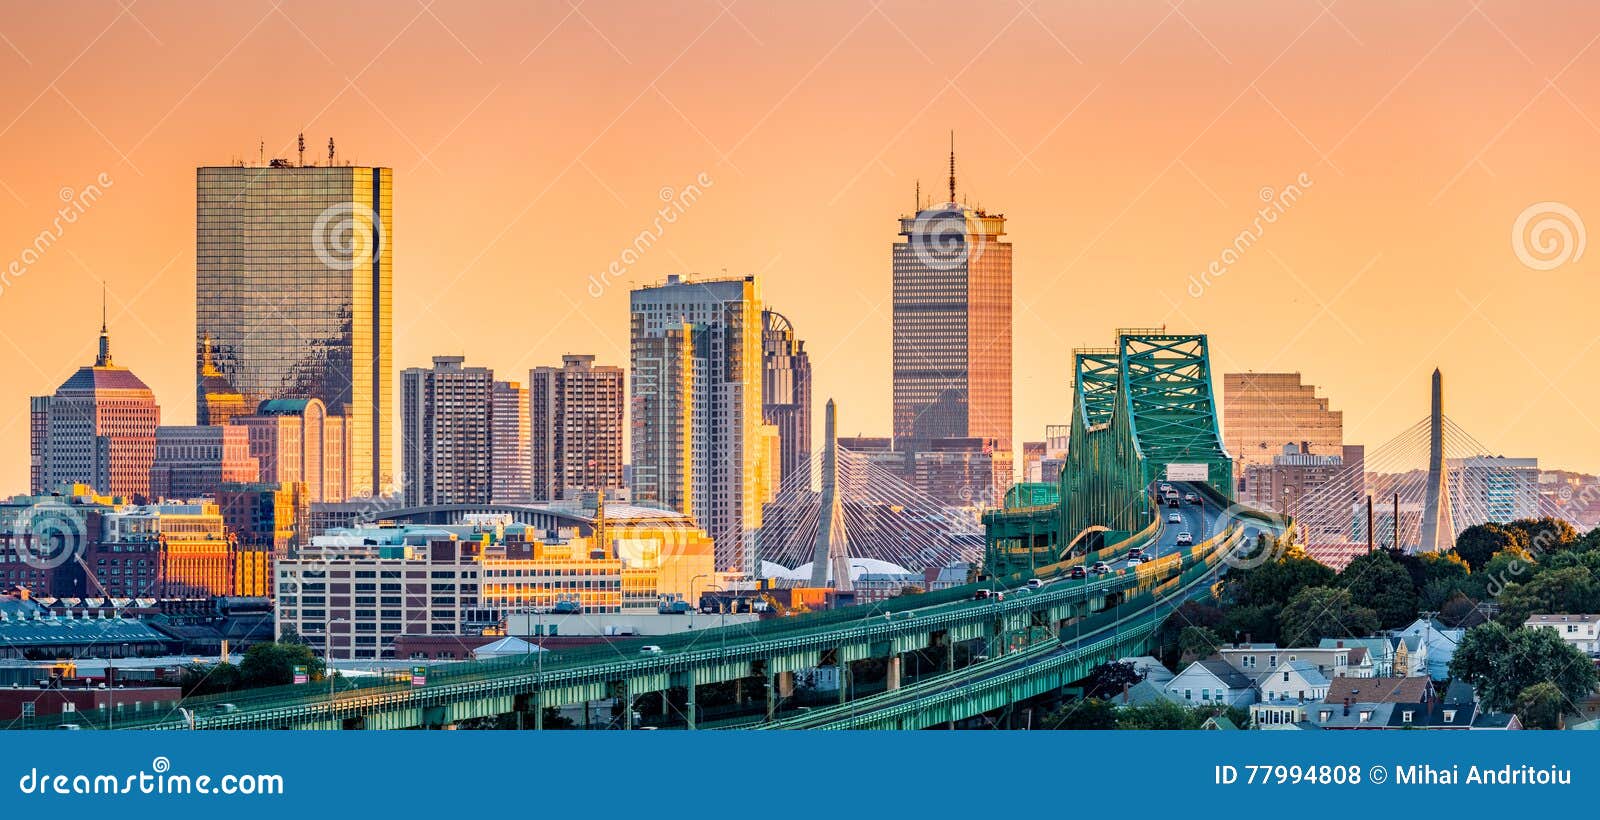 tobin bridge, zakim bridge and boston skyline